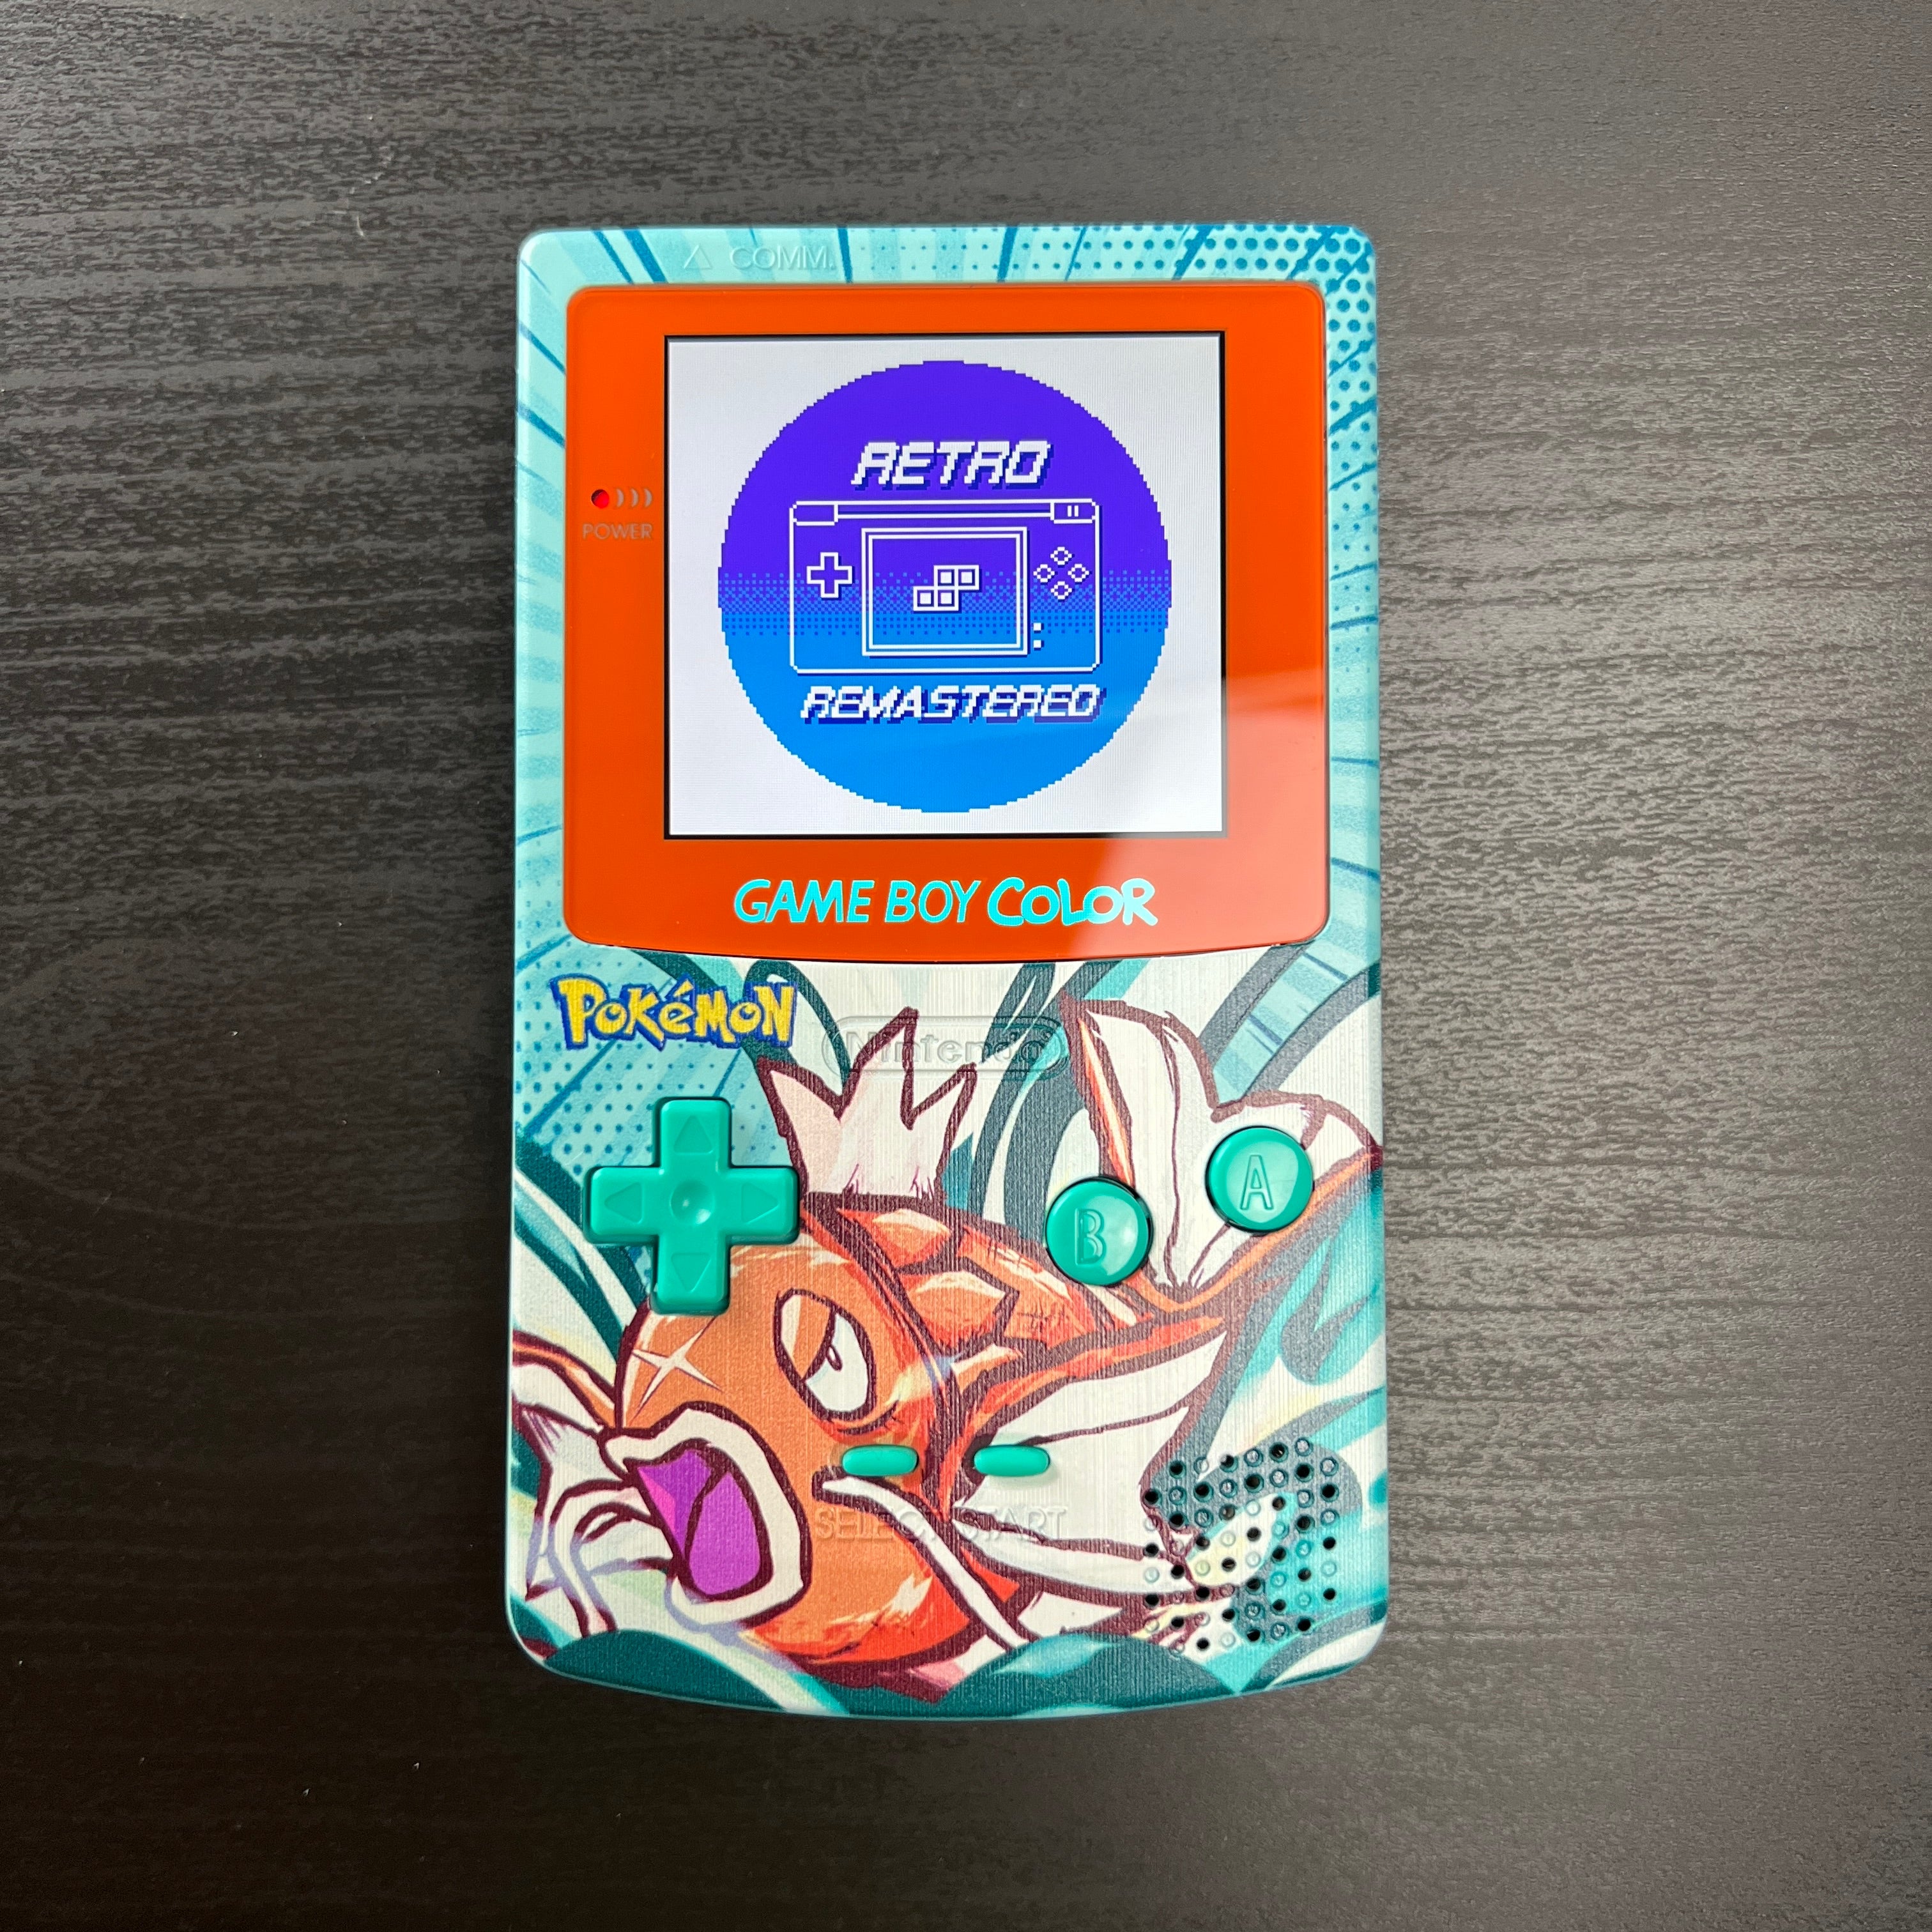 Modded GameBoy Color w/ IPS Display (Magikarp)